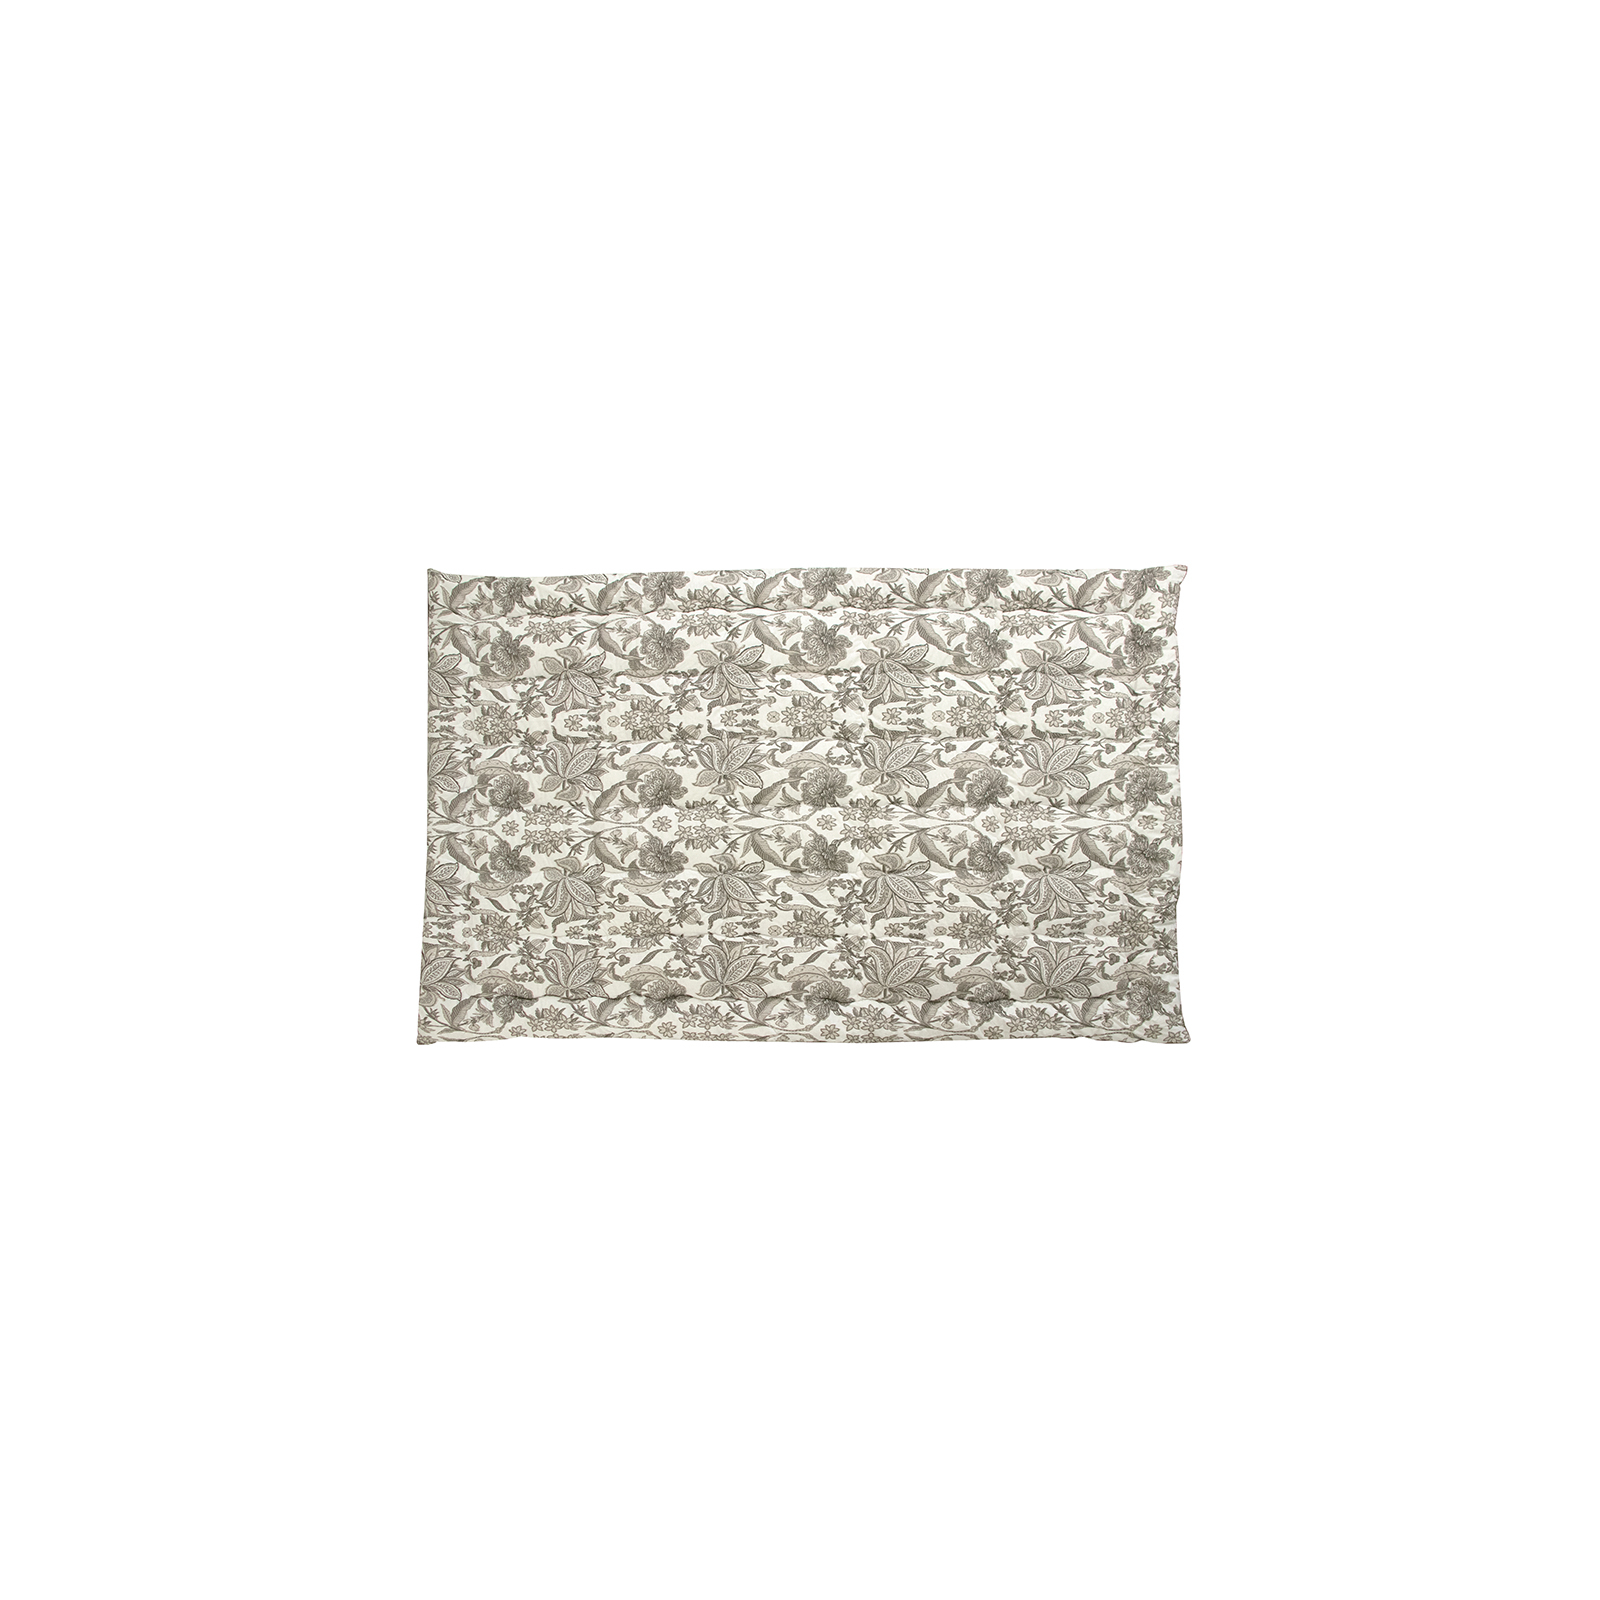 Одеяло Руно шерстяное Luxury зима 140х205 (321.02ШУ_Luxury) изображение 2